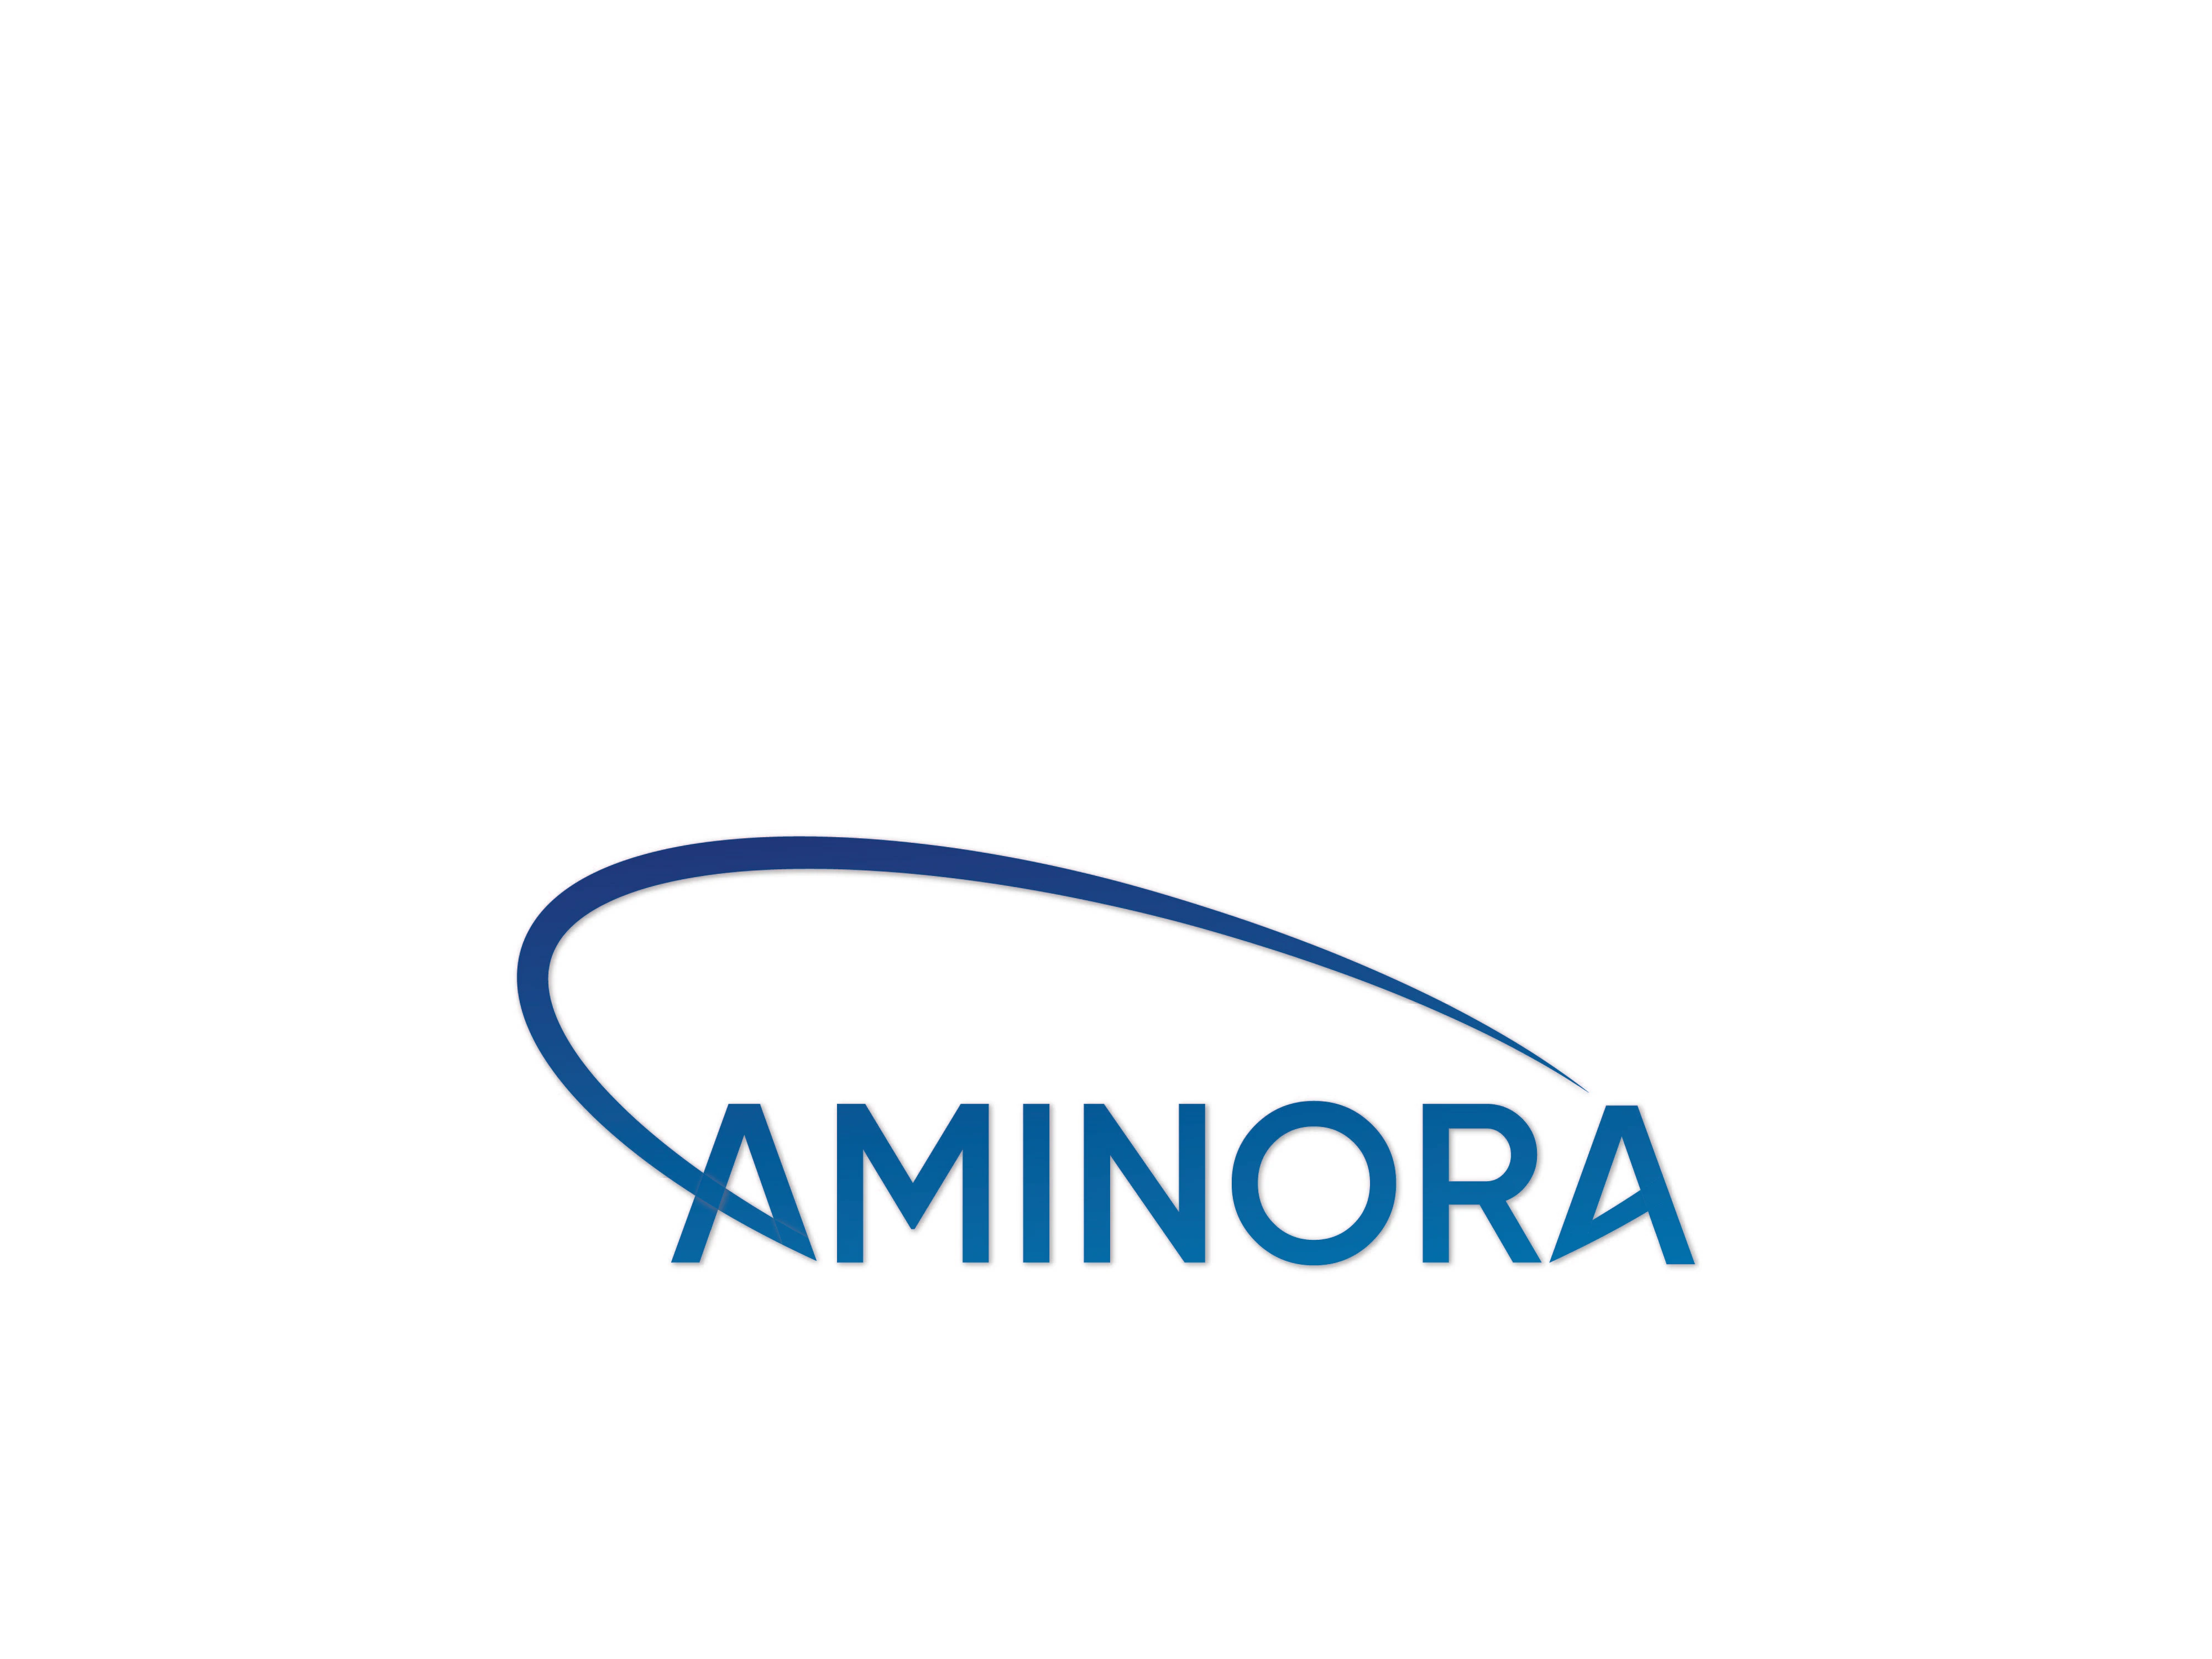 Aminora GmbH